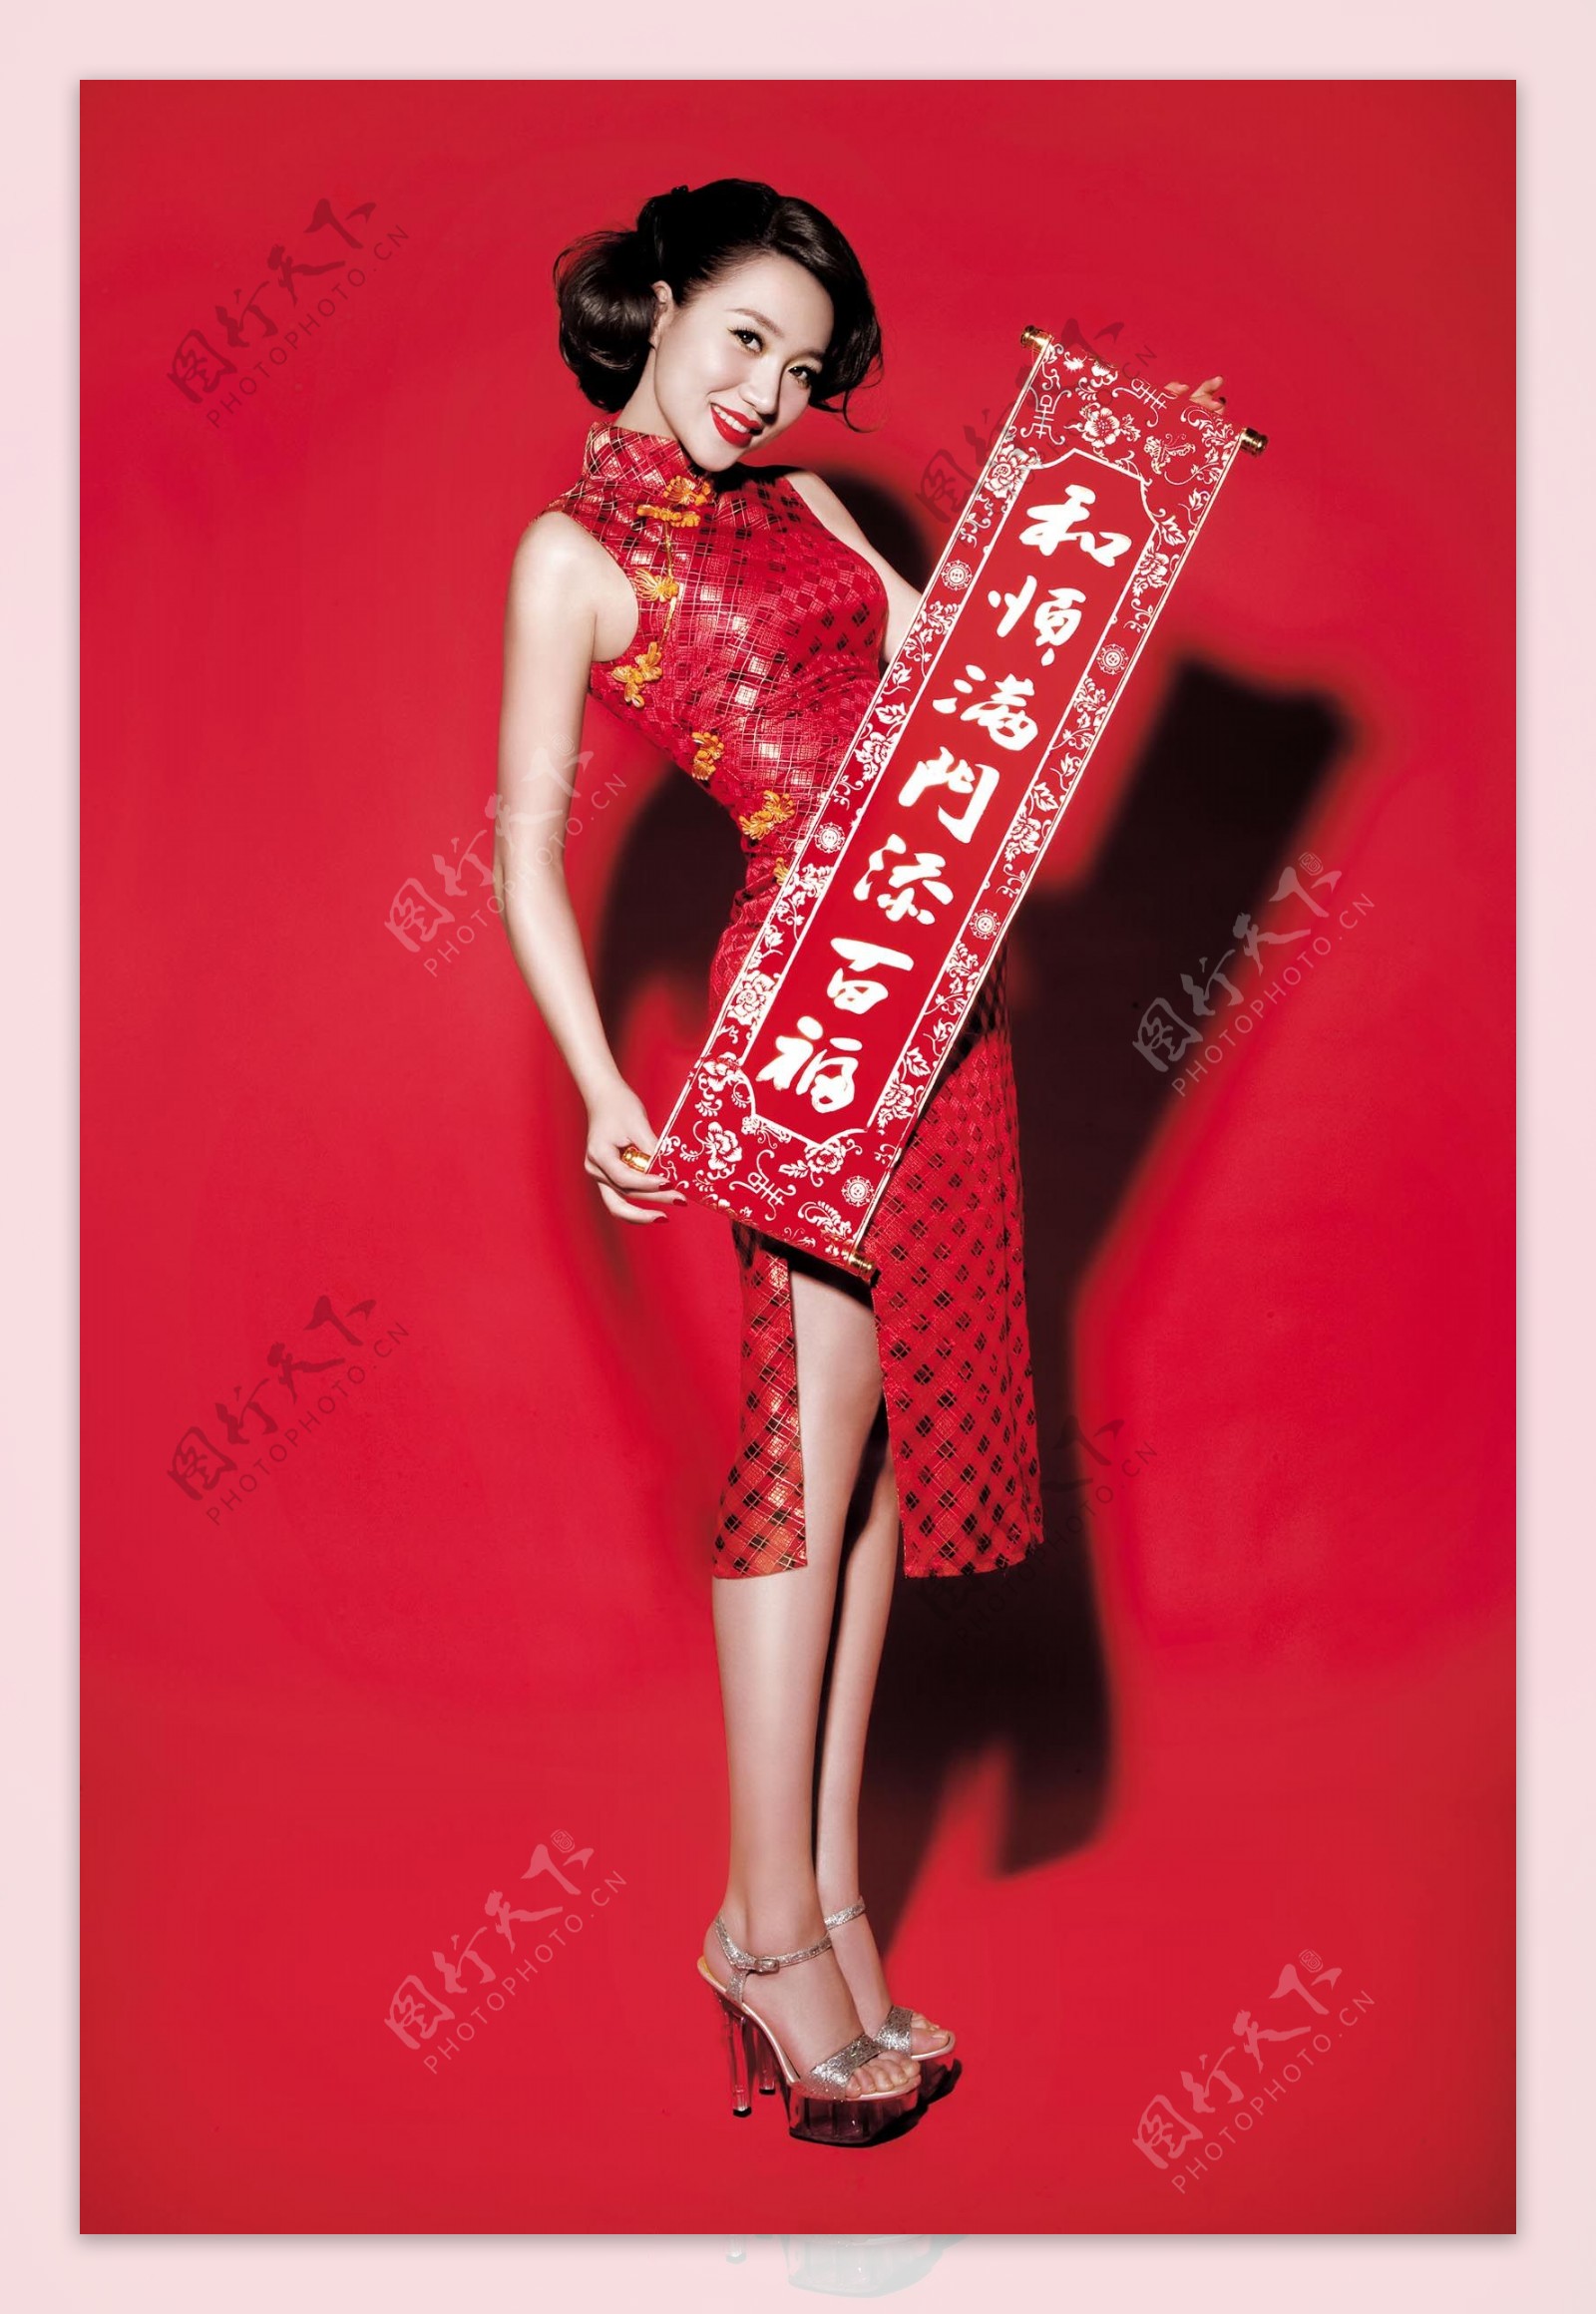 春节红包拜年美女图片 - 站长素材